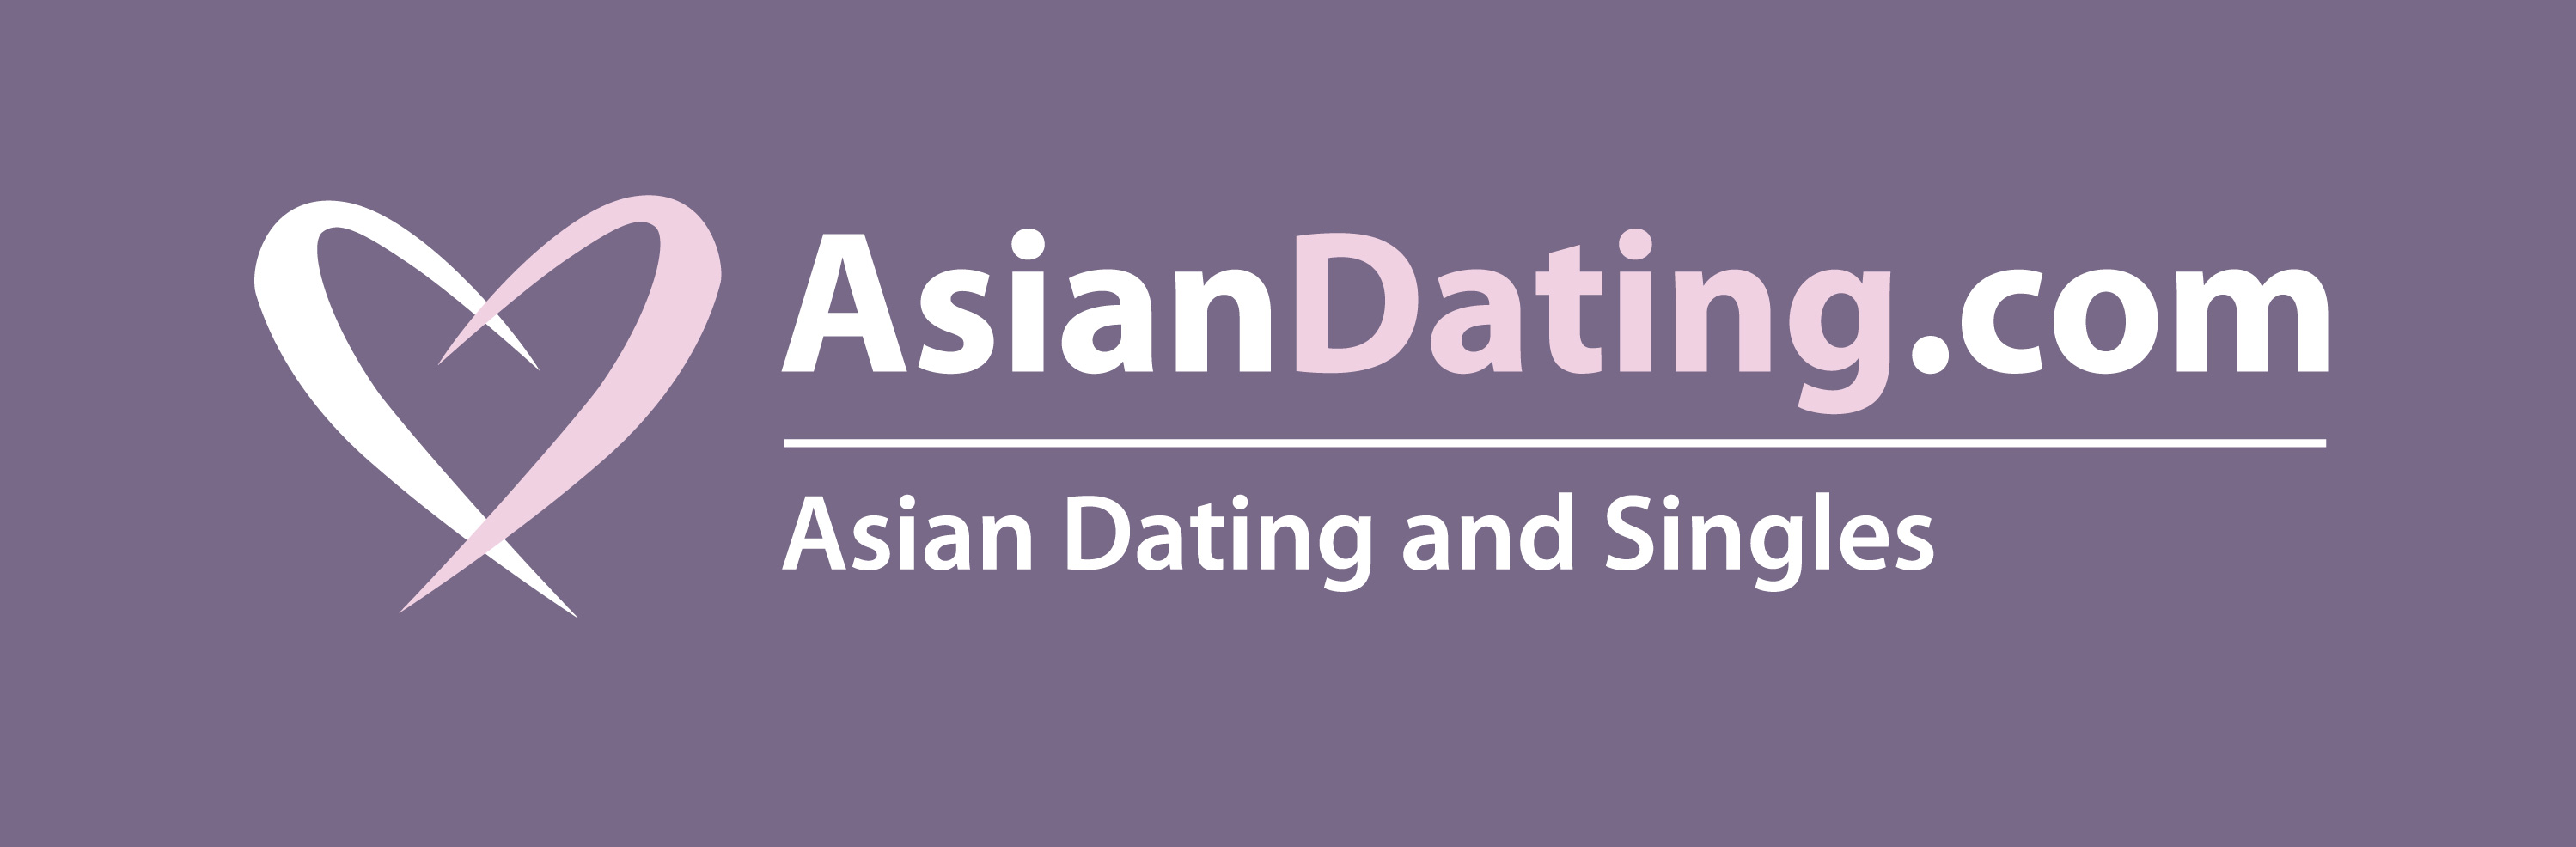 asian dating site legit